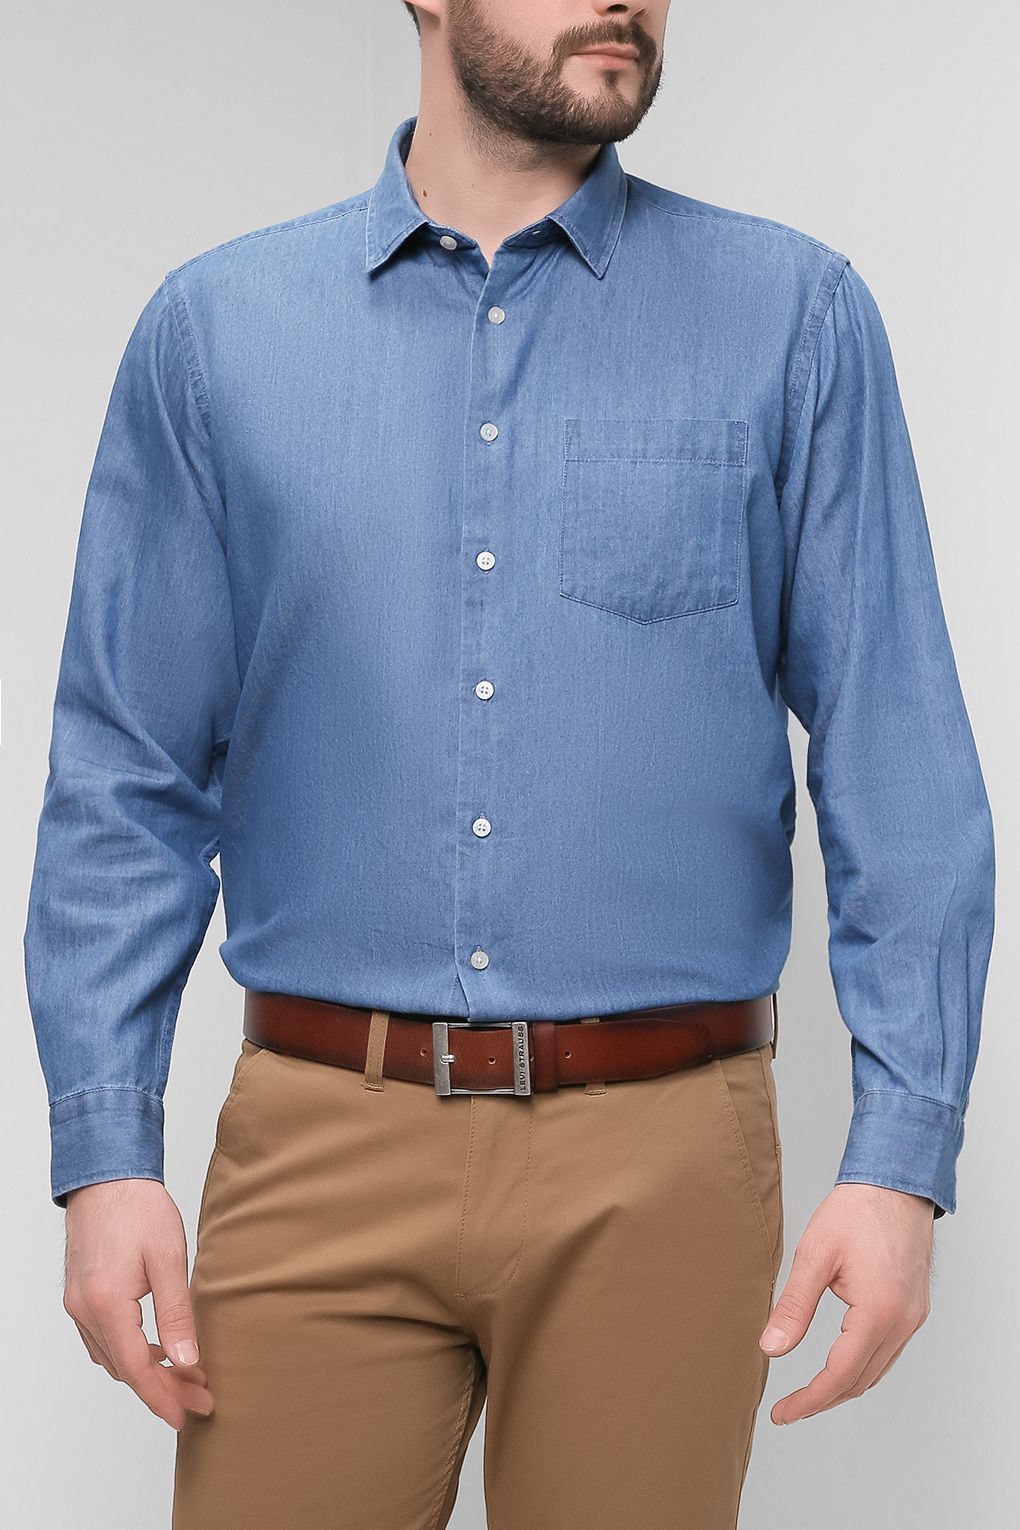 Джинсовая рубашка мужская Cap Horn 2201 JACKSON синяя L